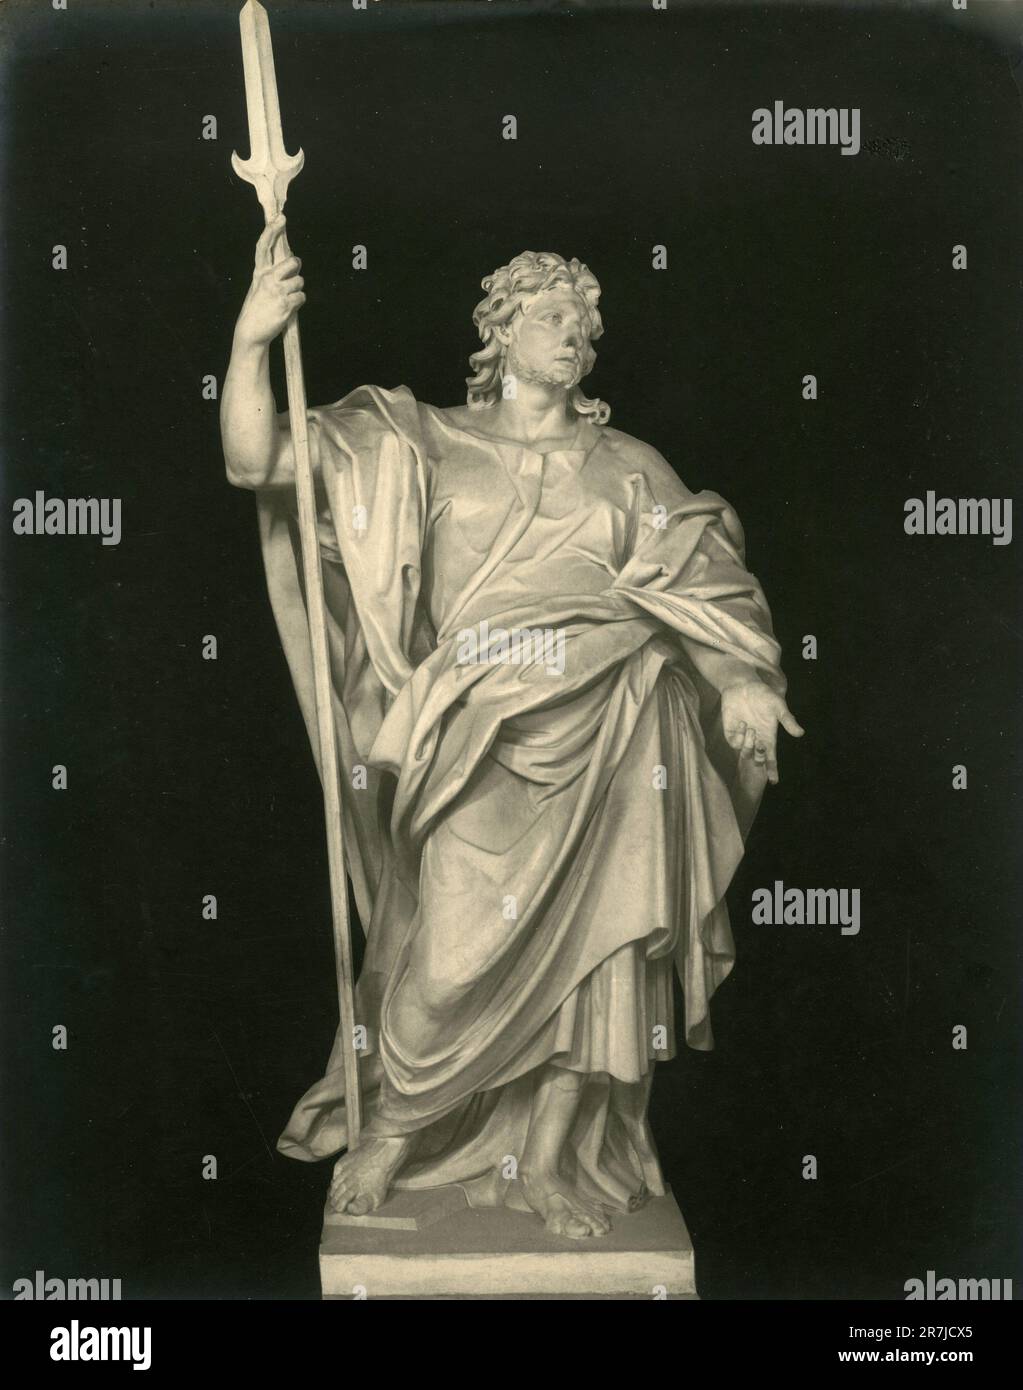 Ancienne statue en marbre de Saint-Jean Jude Thaddeus par l'artiste italien Lorenzo Ottoni, Eglise de Latran, Rome, Italie 1900s Banque D'Images